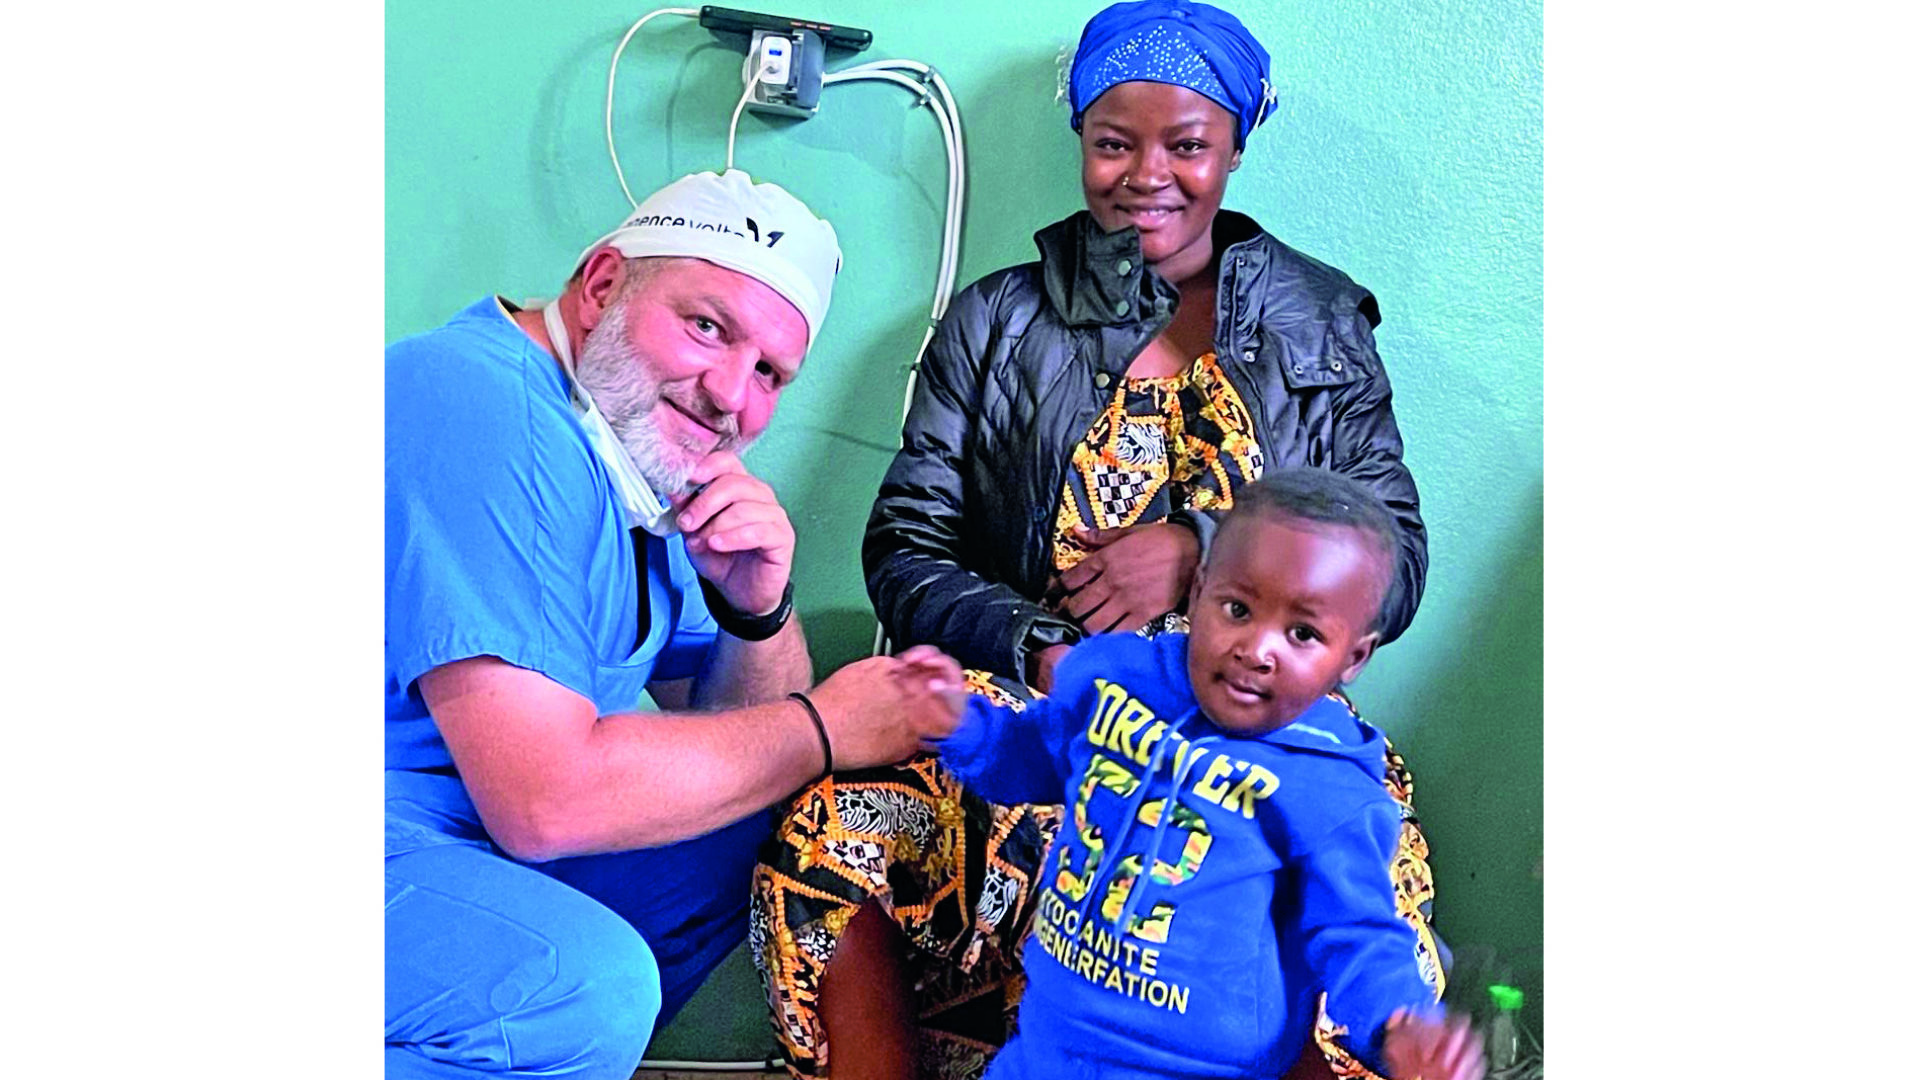 Au bout du chemin, une grande satisfaction pour Pascal Locatelli, ici, lors d'une opération humanitaire au Cameroun, lorsque le cœur passe avant tout. (dr)